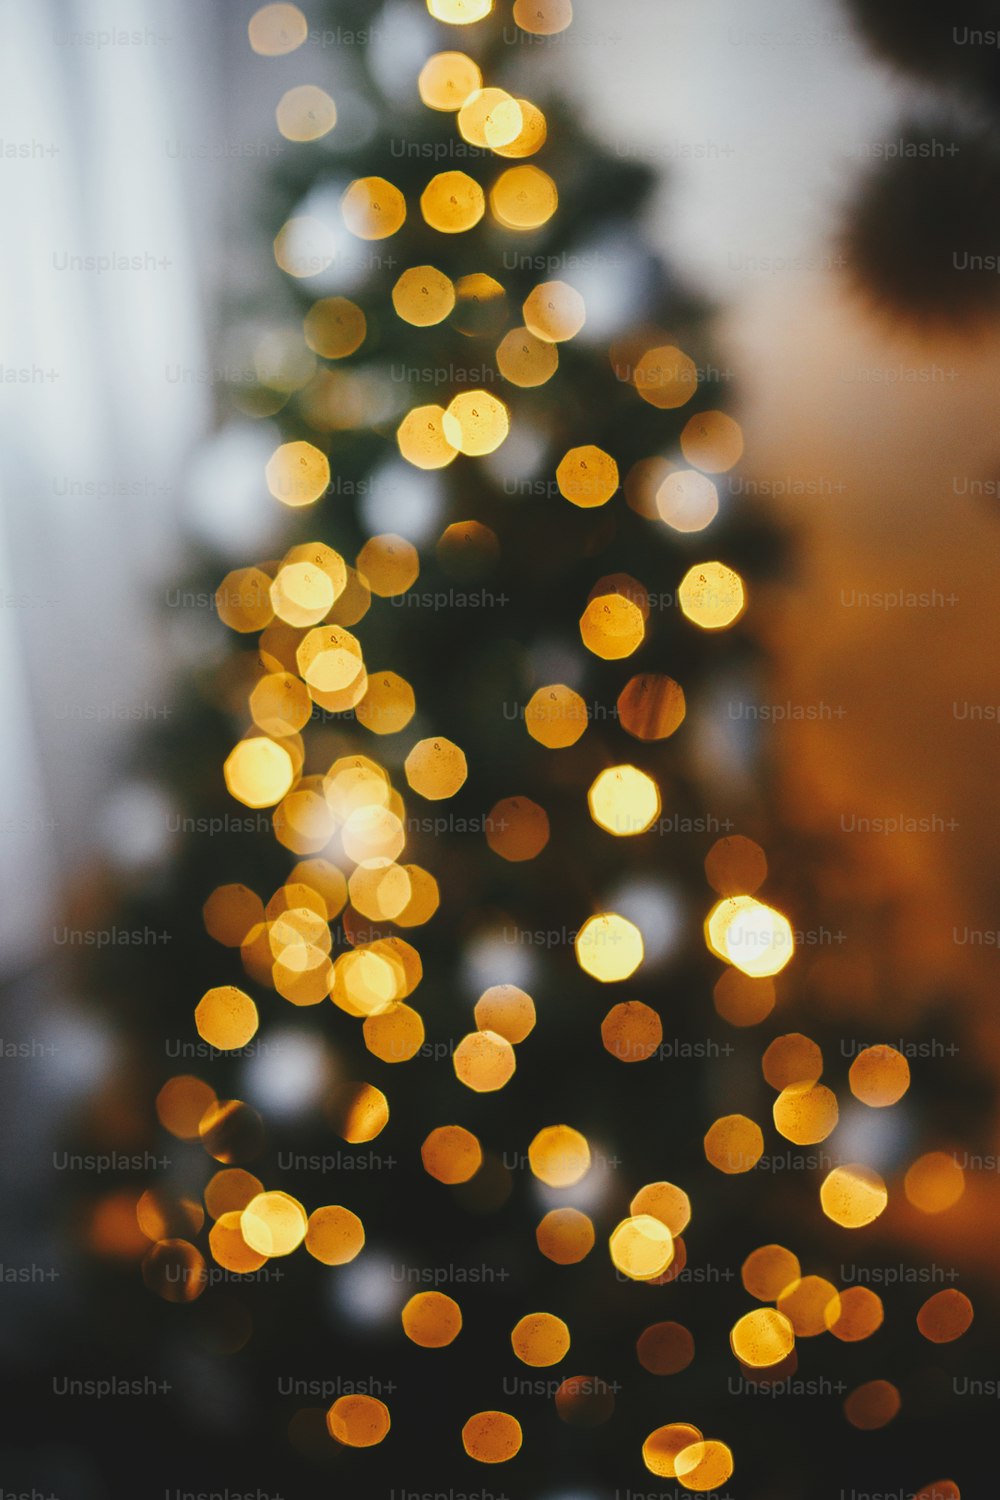 クリスマスの背景。夜のお祝いの部屋のクリスマスツリーのライトの焦点がぼやけています。光るイルミネーションボケ味。雰囲気のあるクリスマスイブ。メリークリスマスとハッピーホリデー